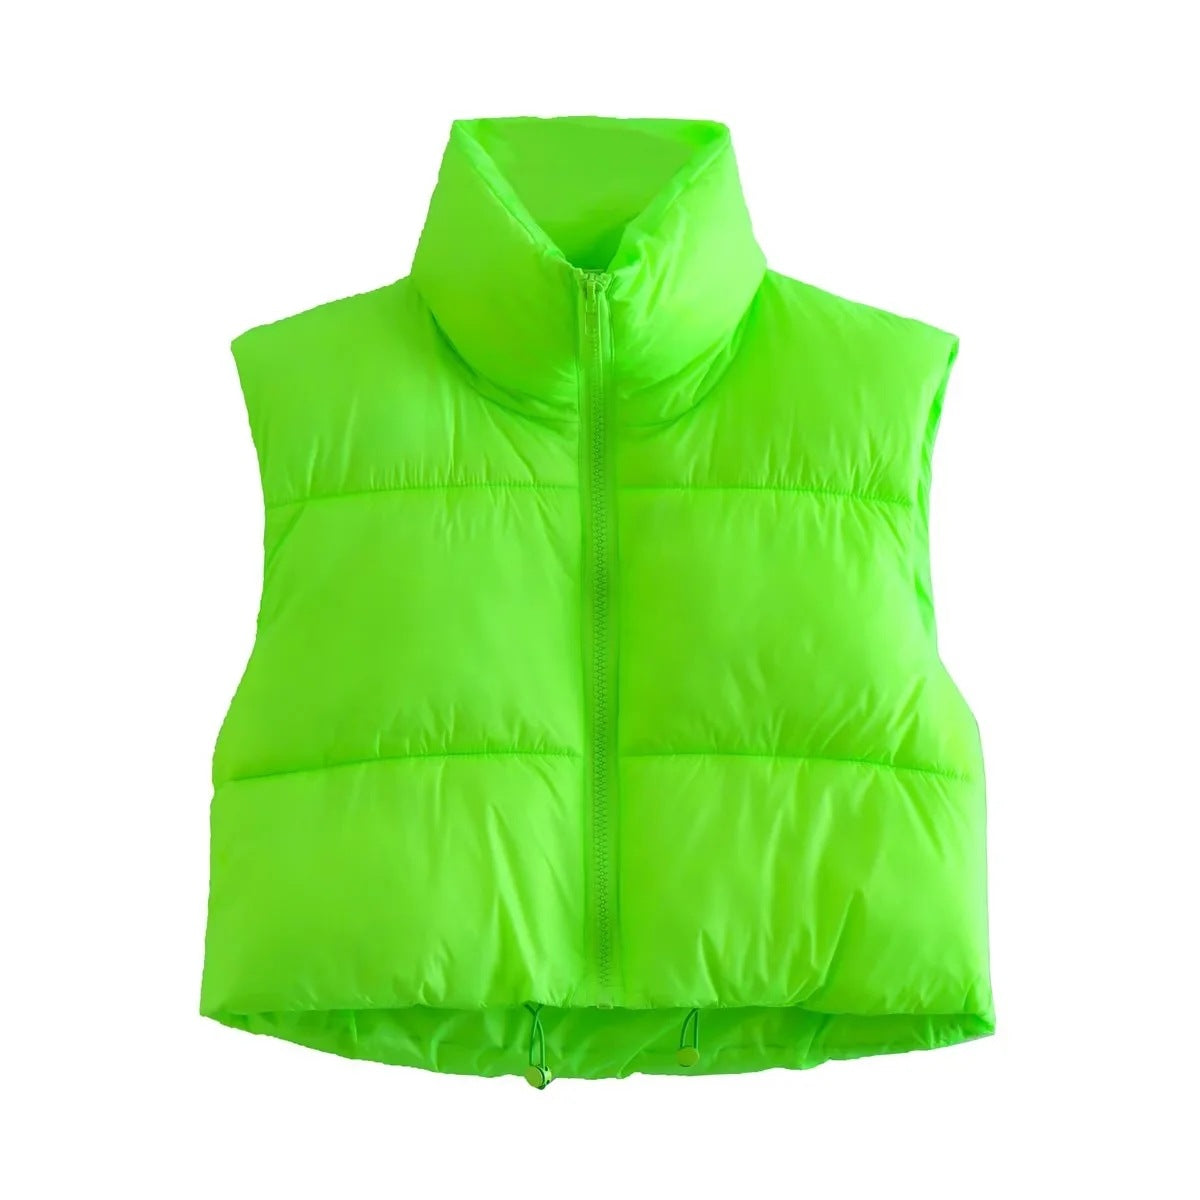 Sasha’s Sleeveless jacket - S / fluorescent green